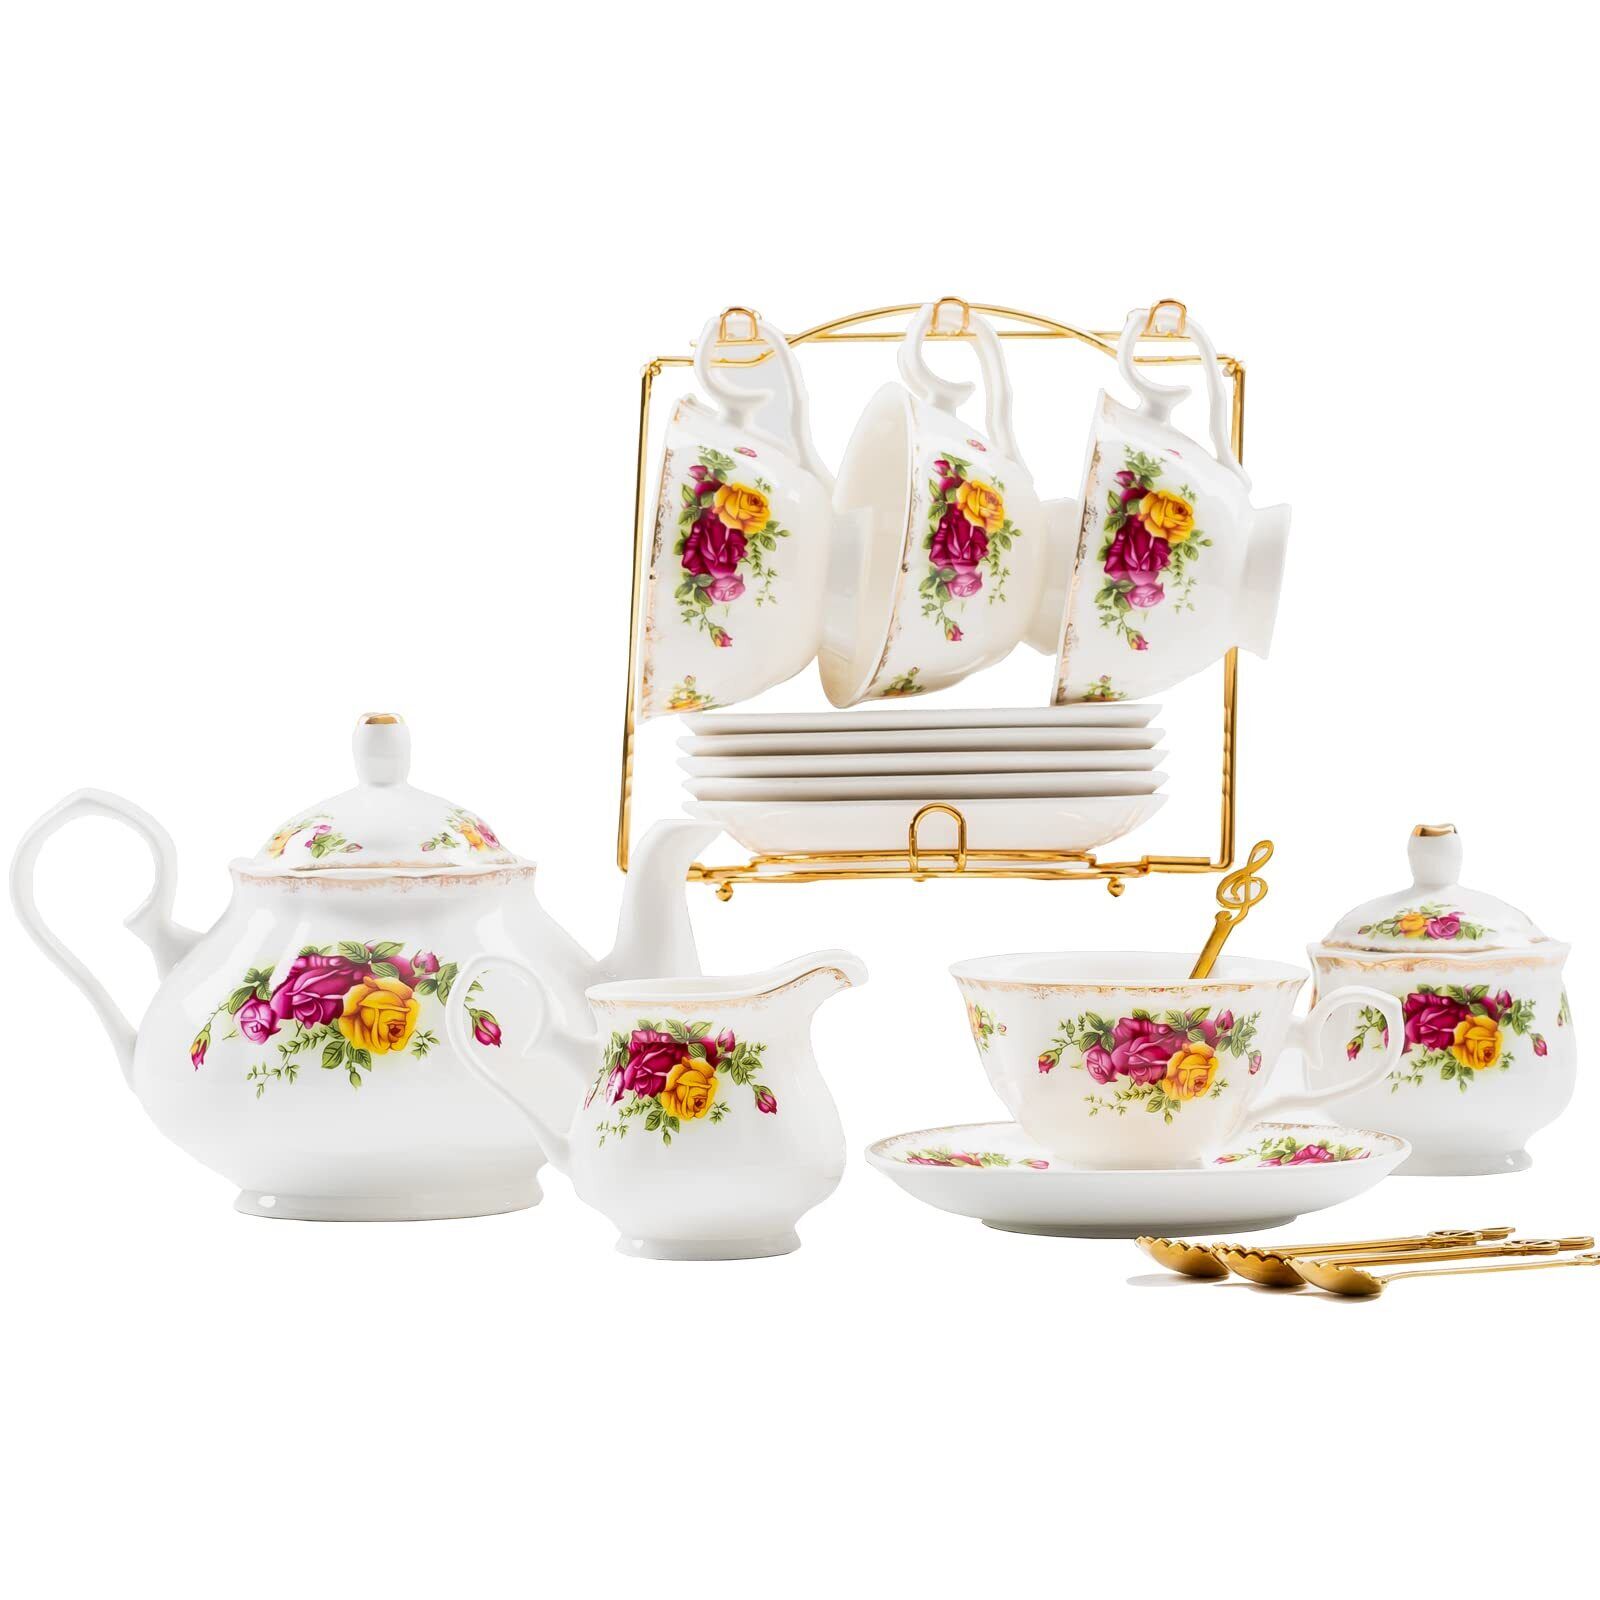 22-Pieces Porcelain Tea Set,Vintage Floral Tea Gift Sets,Cups& Saucer Service...